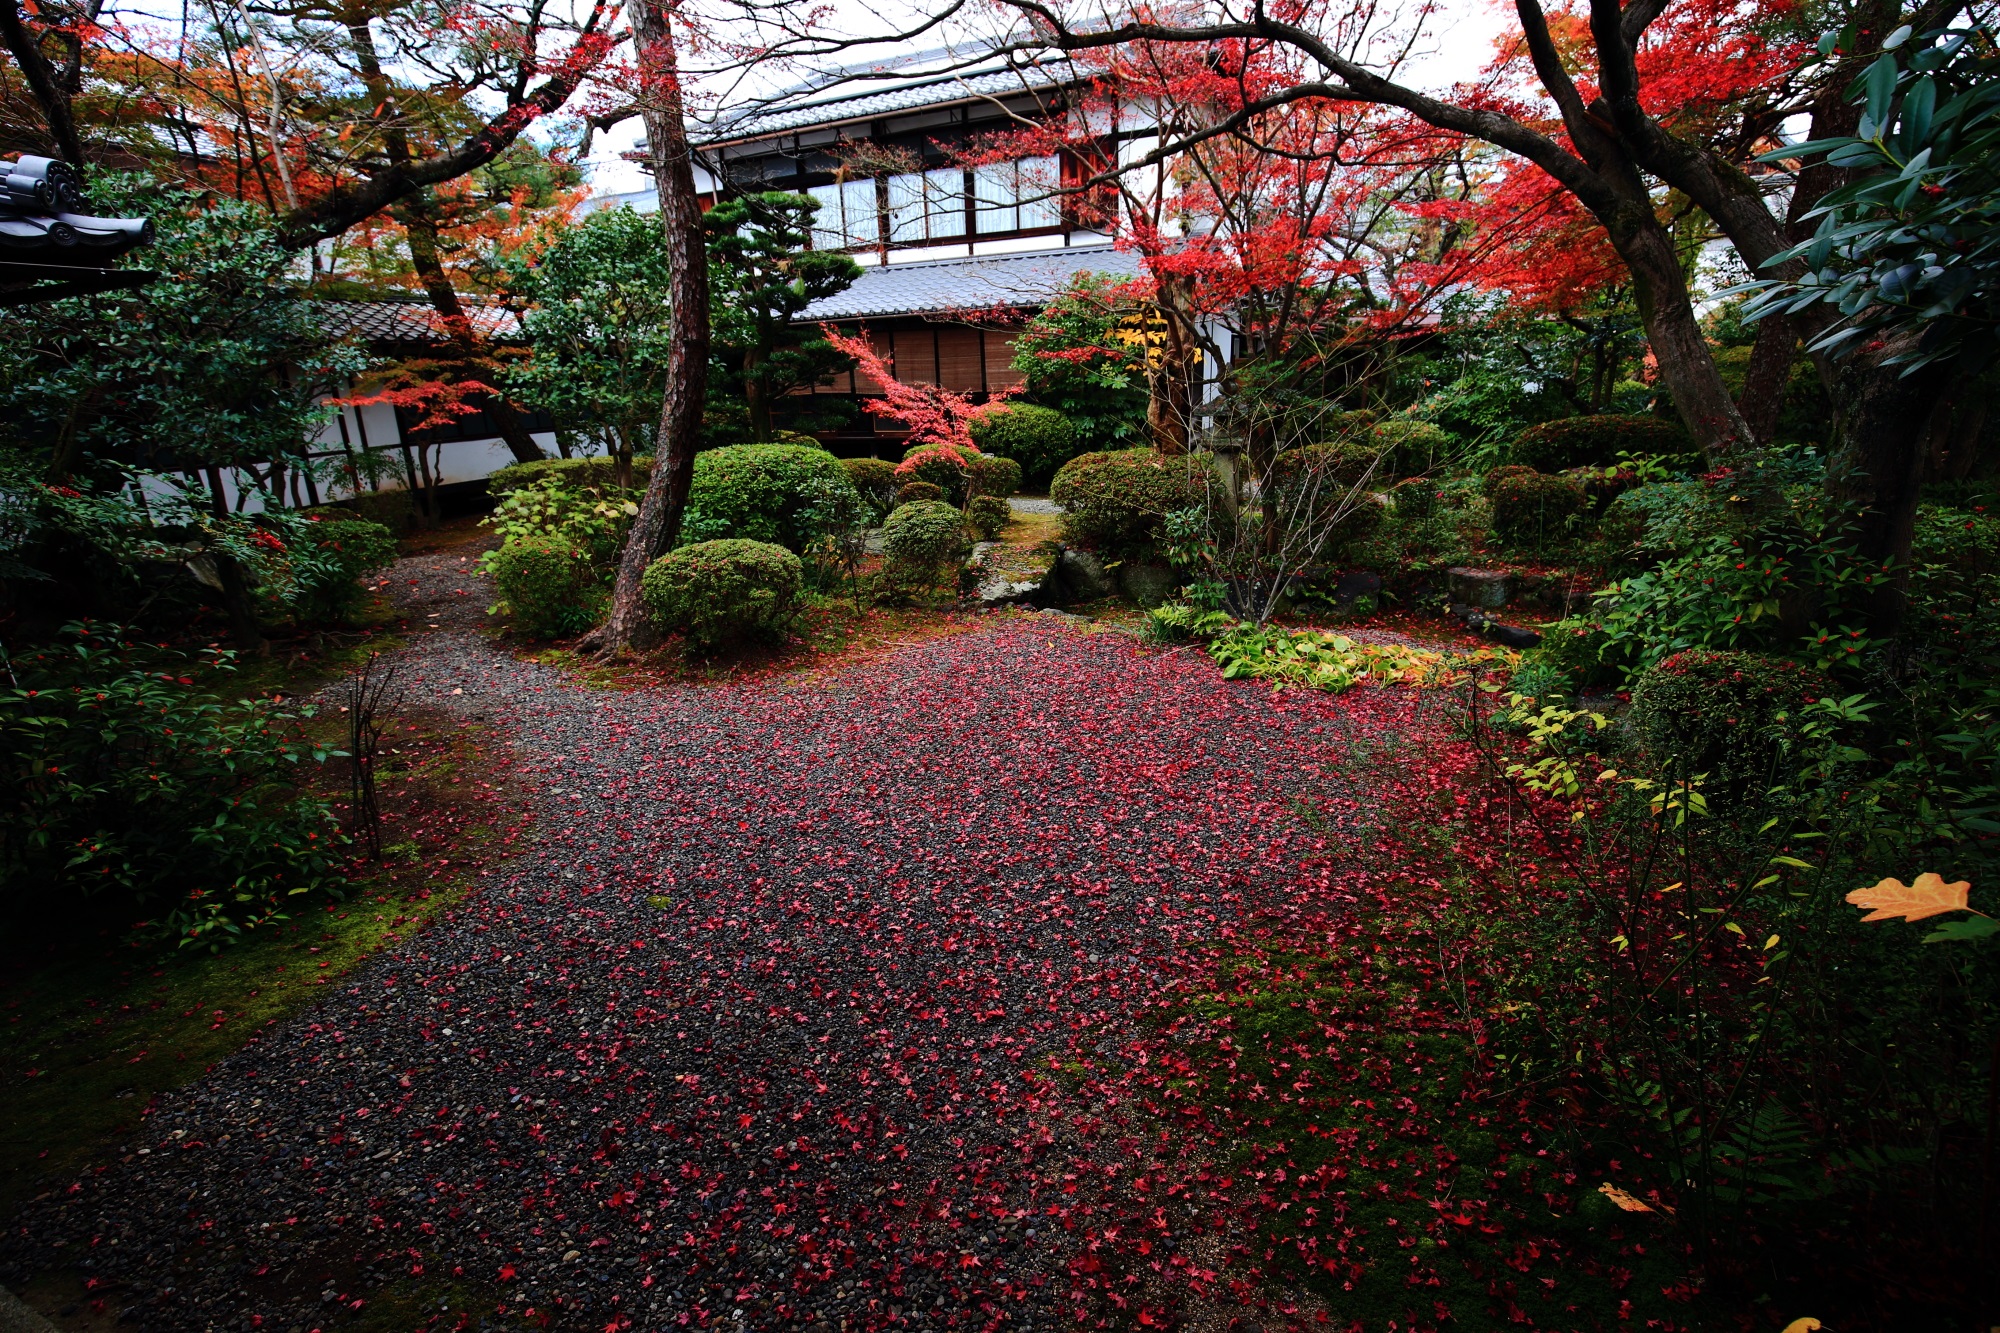 廬山寺の中庭の独特の雰囲気の散り紅葉